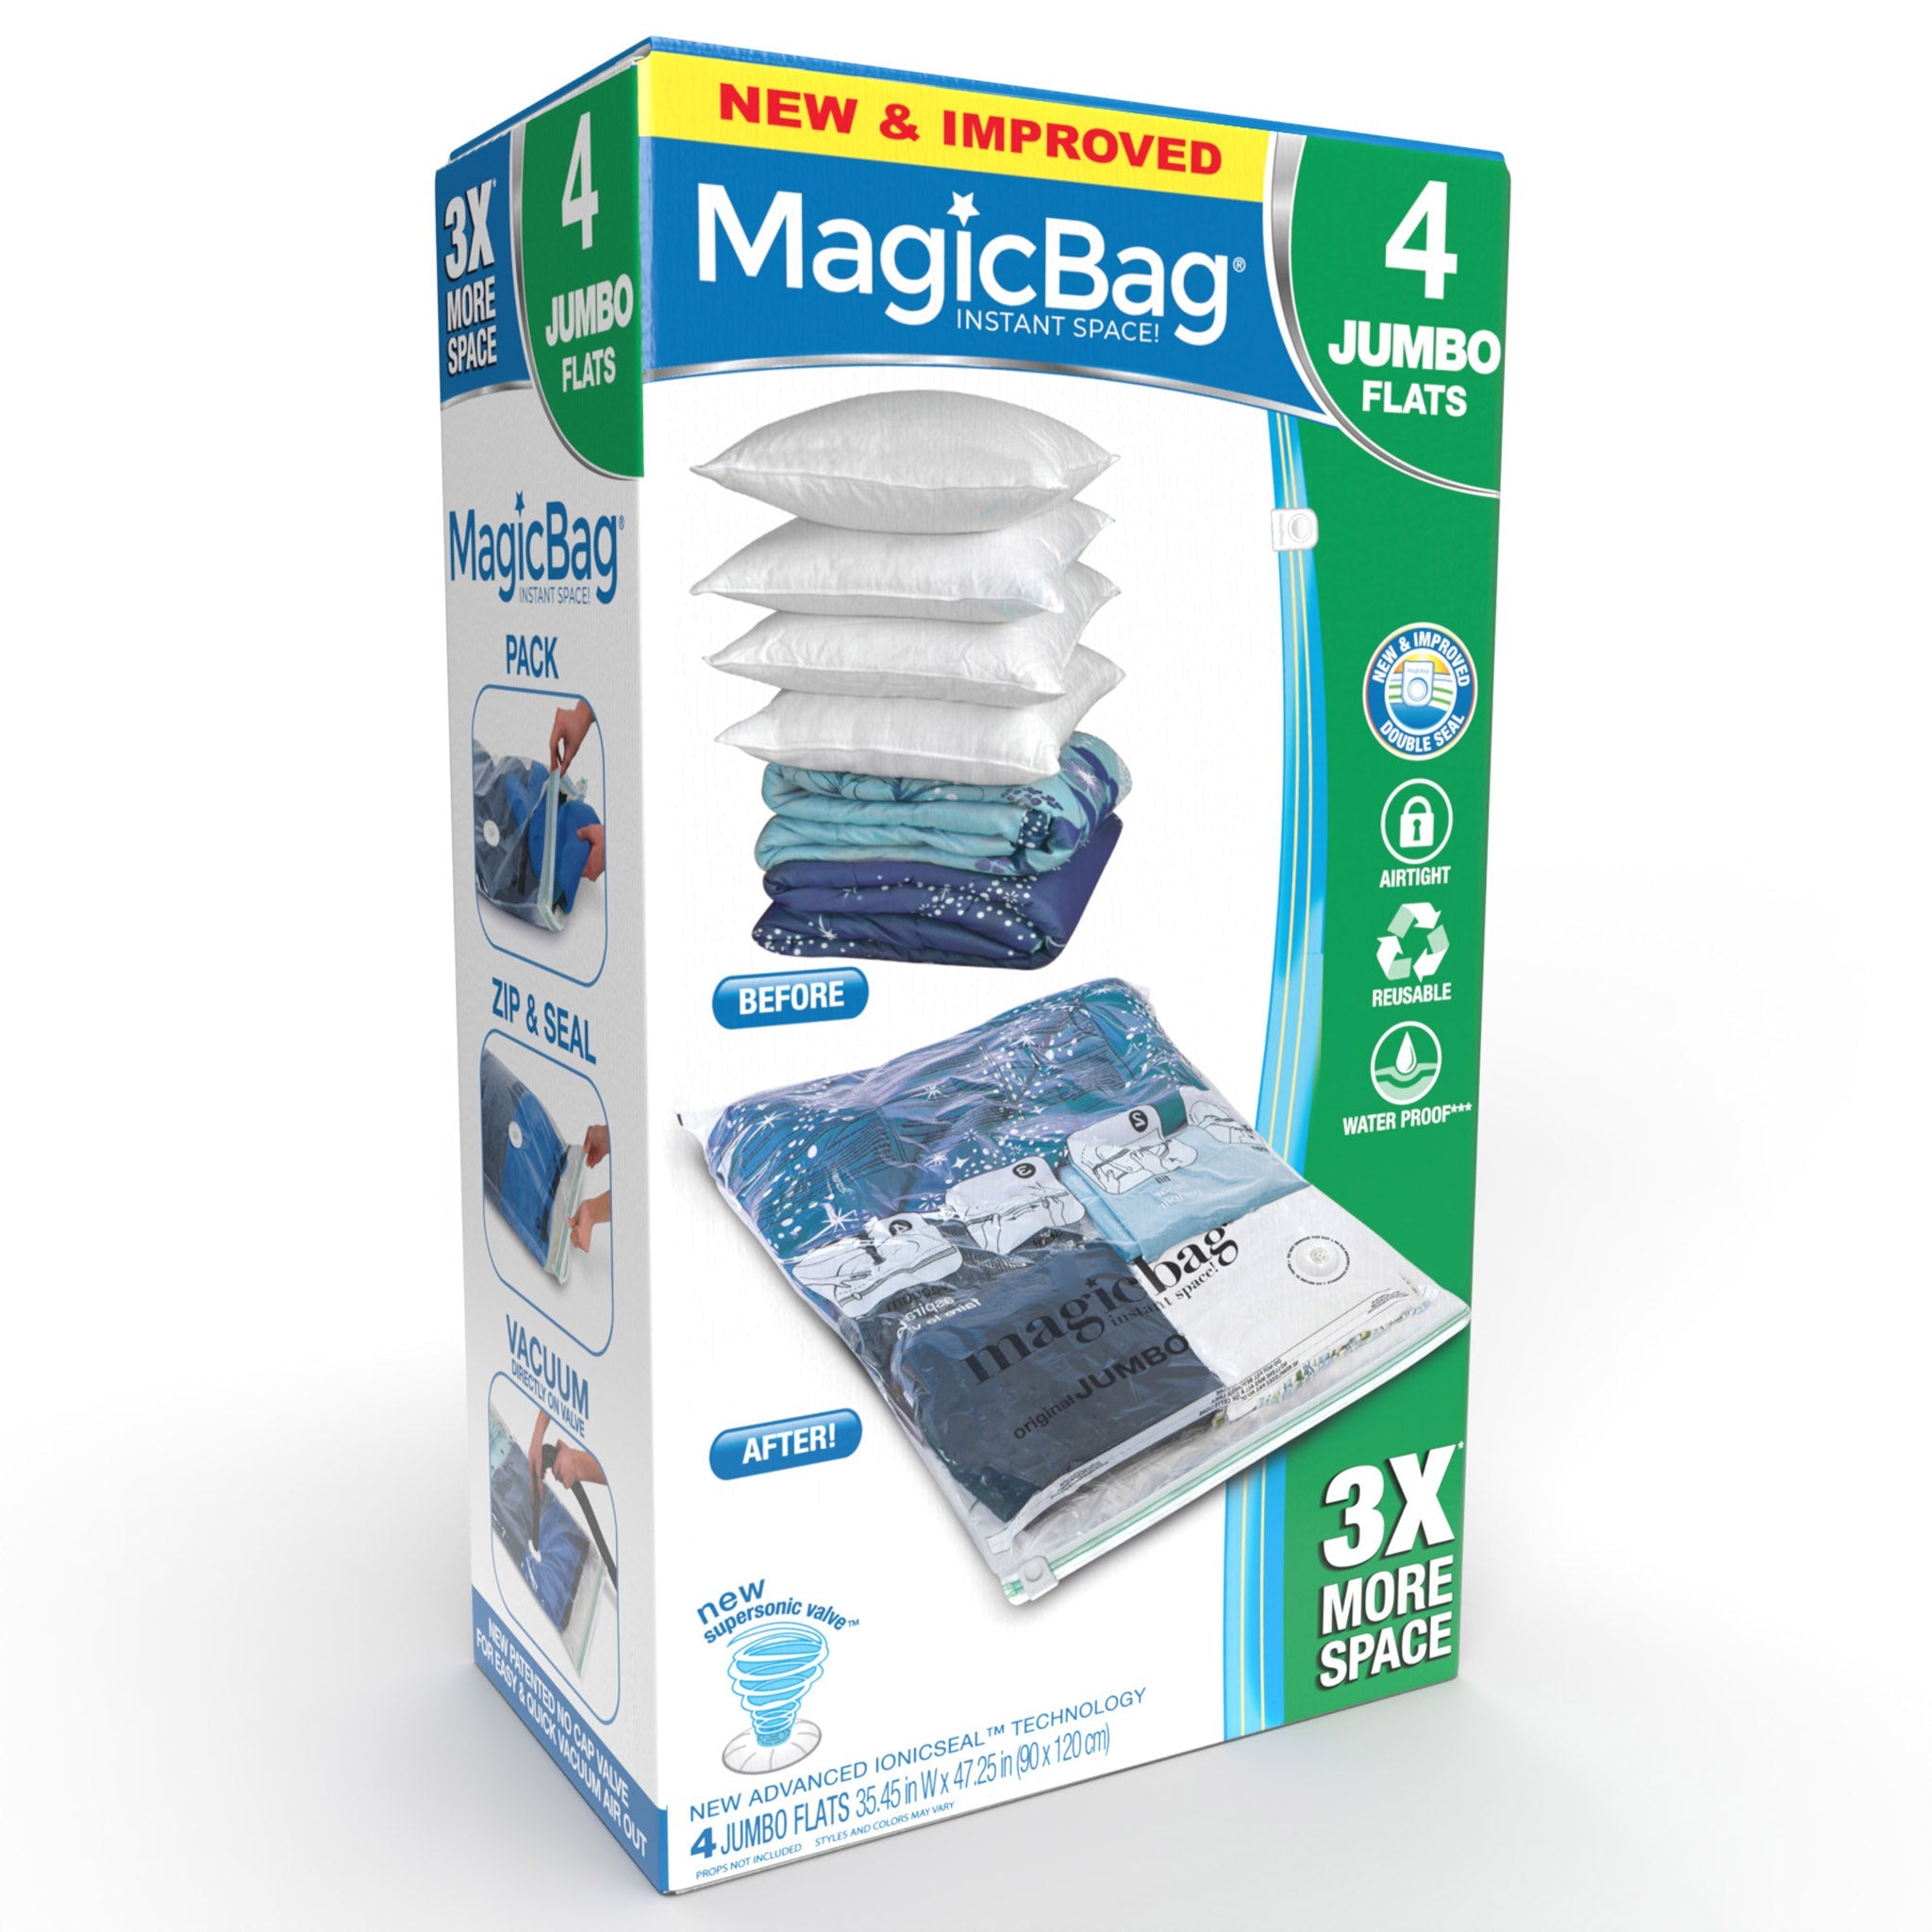 https://www.shopsmartdesign.com/cdn/shop/products/magicbag-instant-space-saver-storage-flat-jumbo-smart-design-magicbag-5717412-200-incrementing-number-269880_2048x2048.jpg?v=1679340548